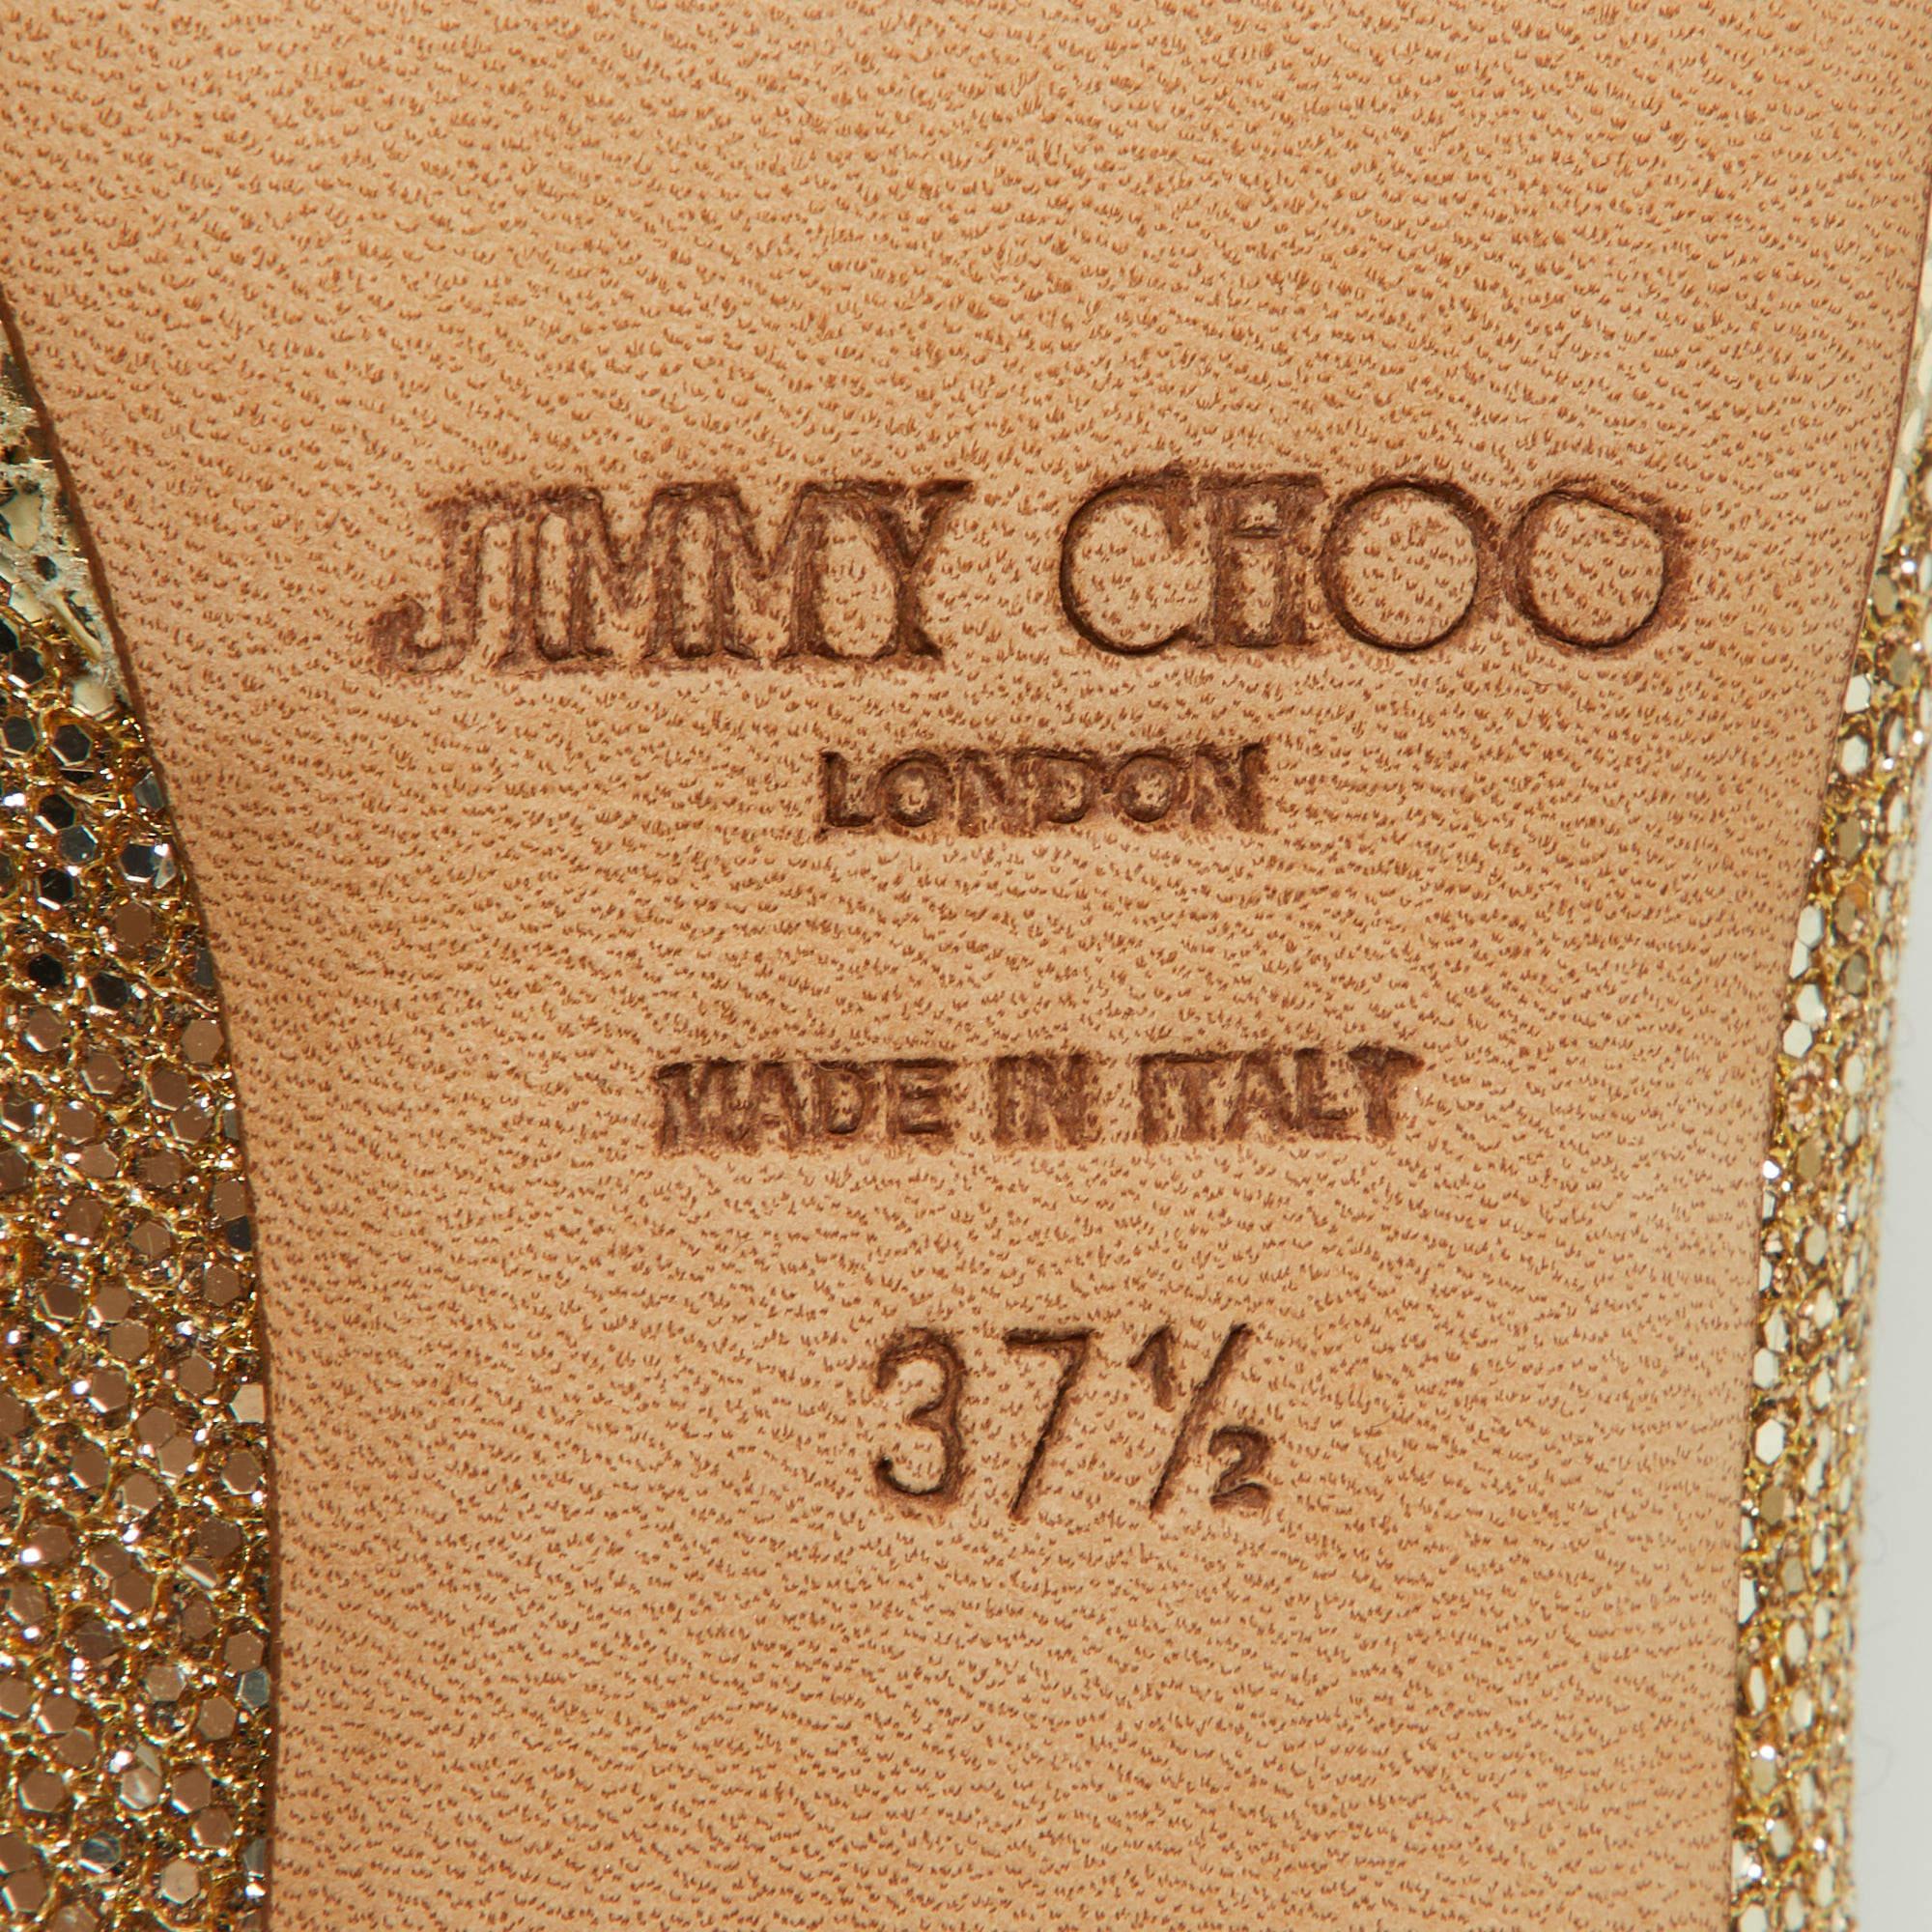 Élevez votre ensemble avec ces talons Jimmy Choo pour femme. Méticuleusement confectionnés, ces talons exquis sont synonymes de luxe et de style. Une déclaration de grâce et de confiance, parfaite pour toute occasion.

